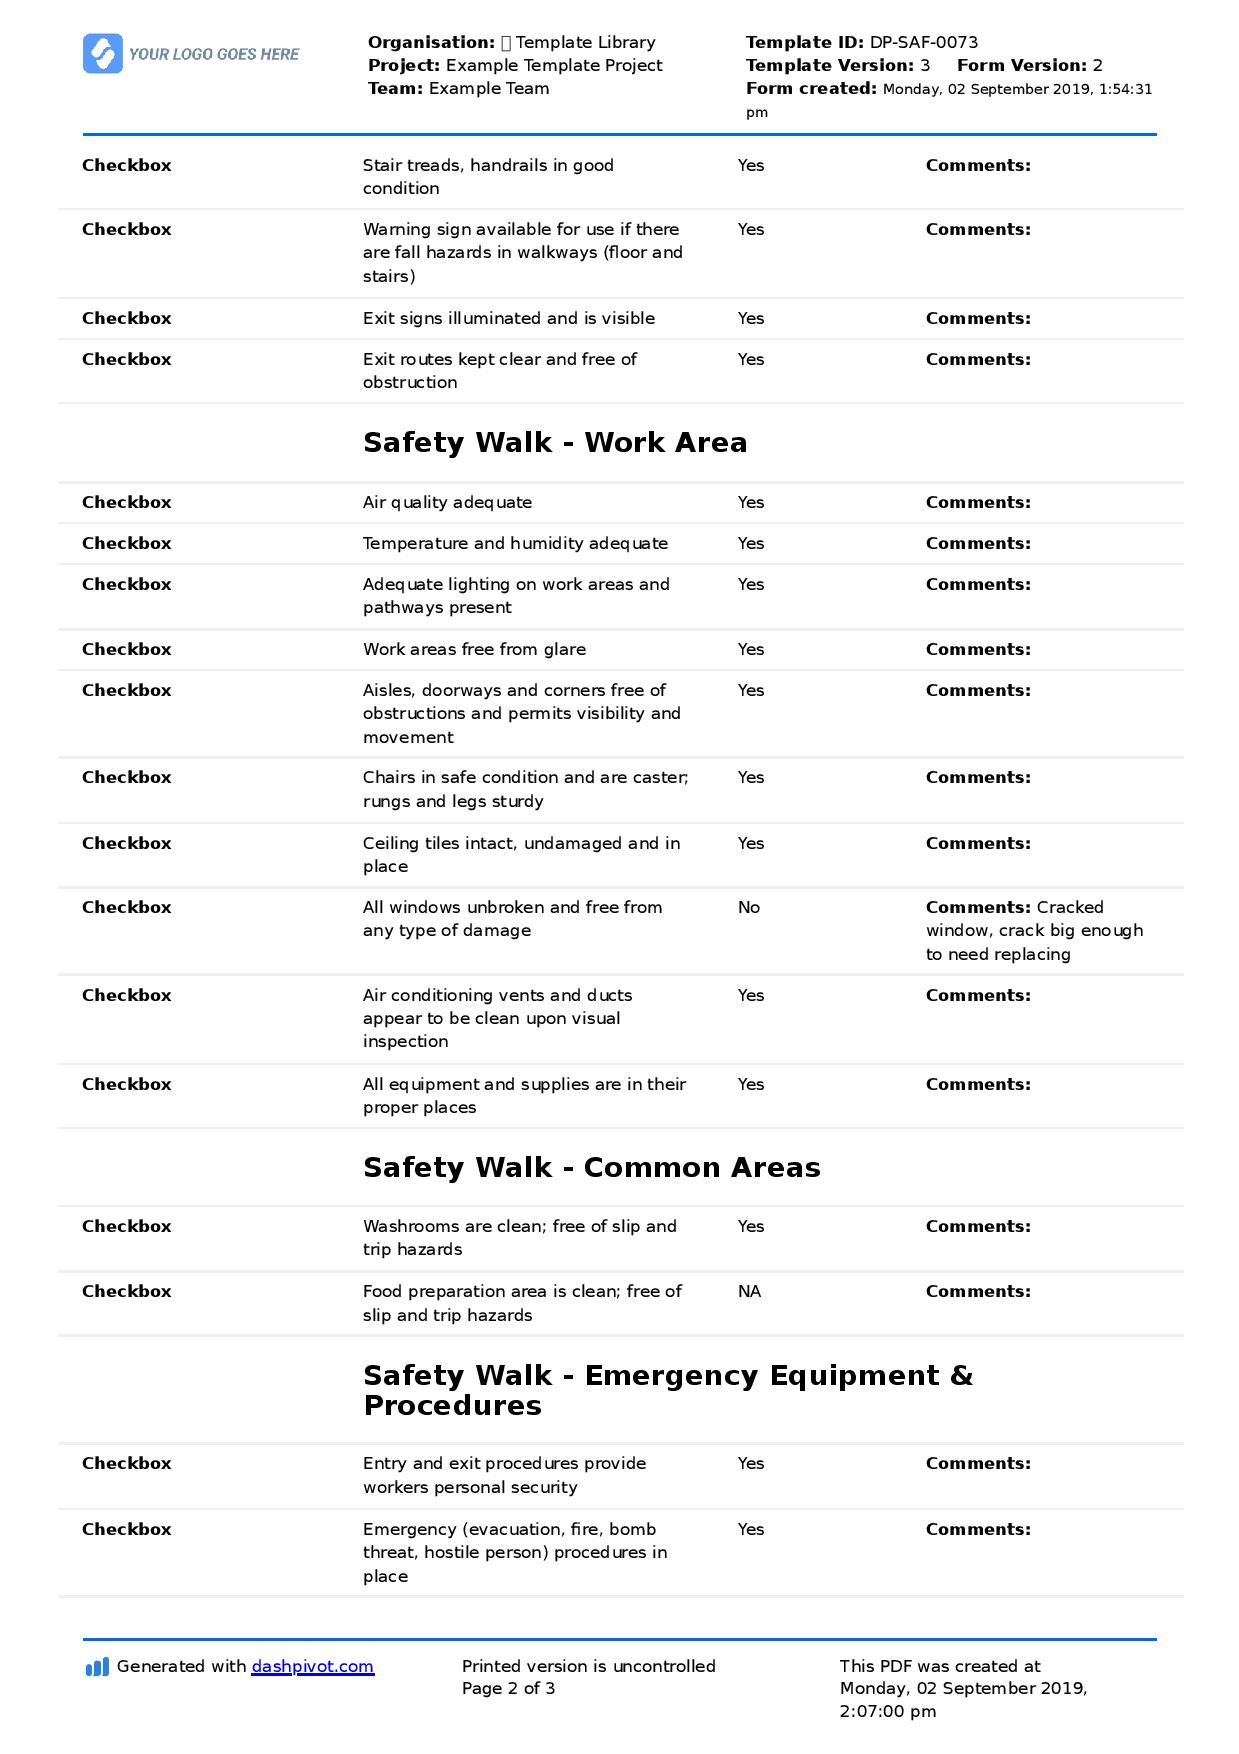 business travel safety checklist